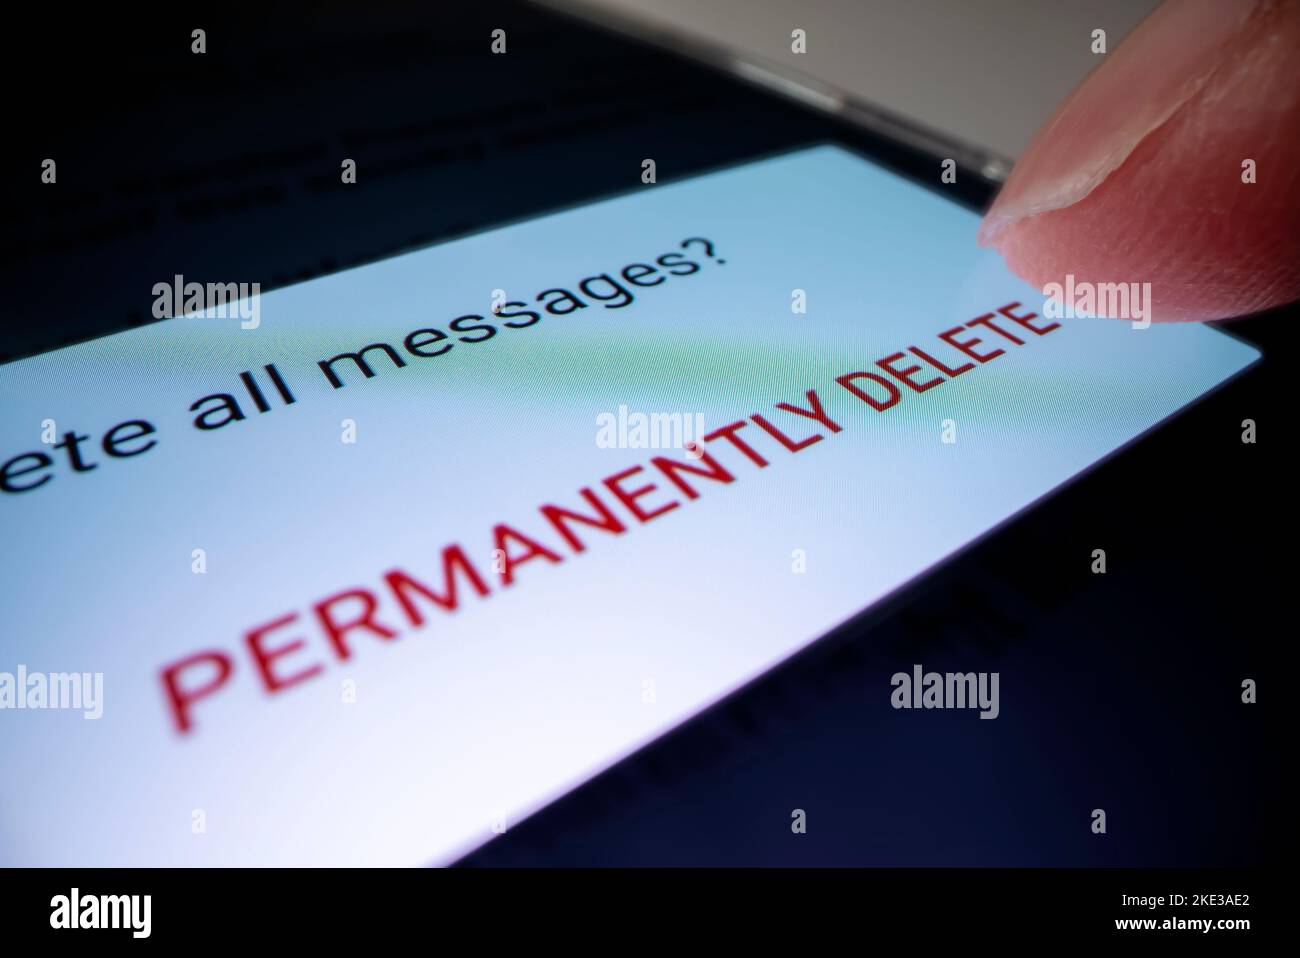 Nahaufnahme des permanenten Löschens von Junk-E-Mails auf einem Smartphone, aufgenommen mit Makro-Sondenobjektiv Stockfoto